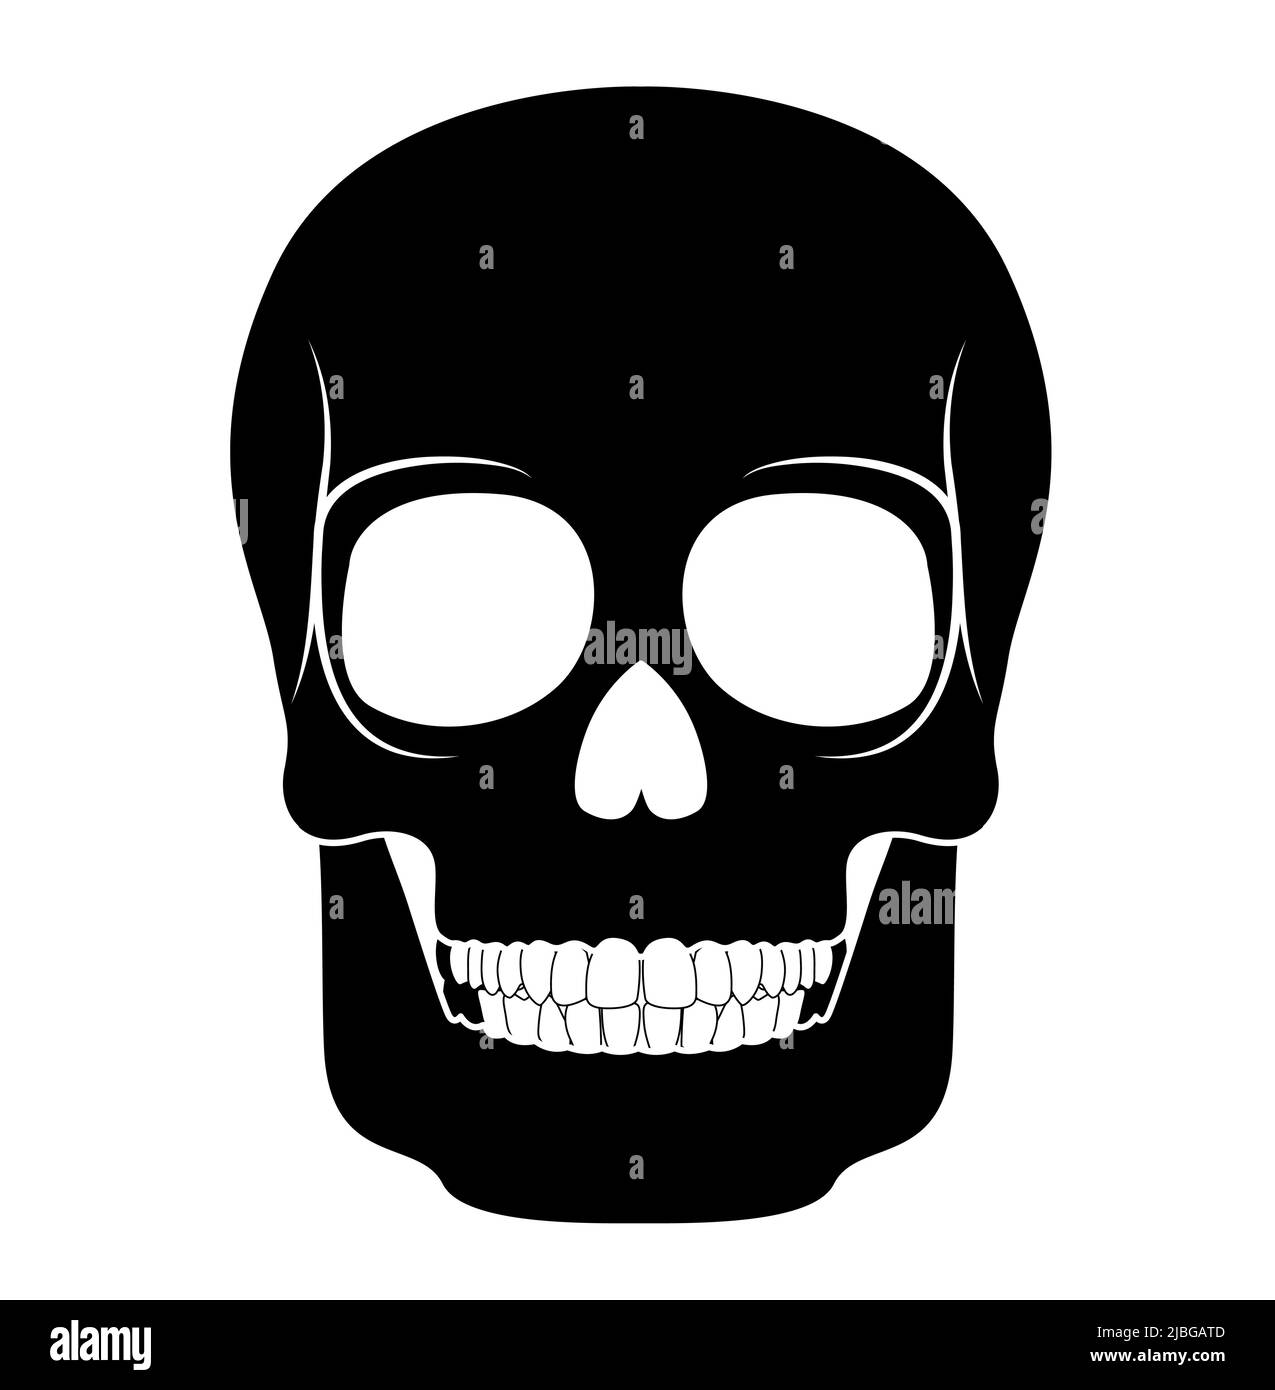 Scheletro cranio umano silhouette testa corpo ossa - cranio, viso, calvaria, mandibola anteriore anteriore ventrale vista piatta nero concetto vettoriale illustrazione di anatomia isolata su sfondo bianco Illustrazione Vettoriale